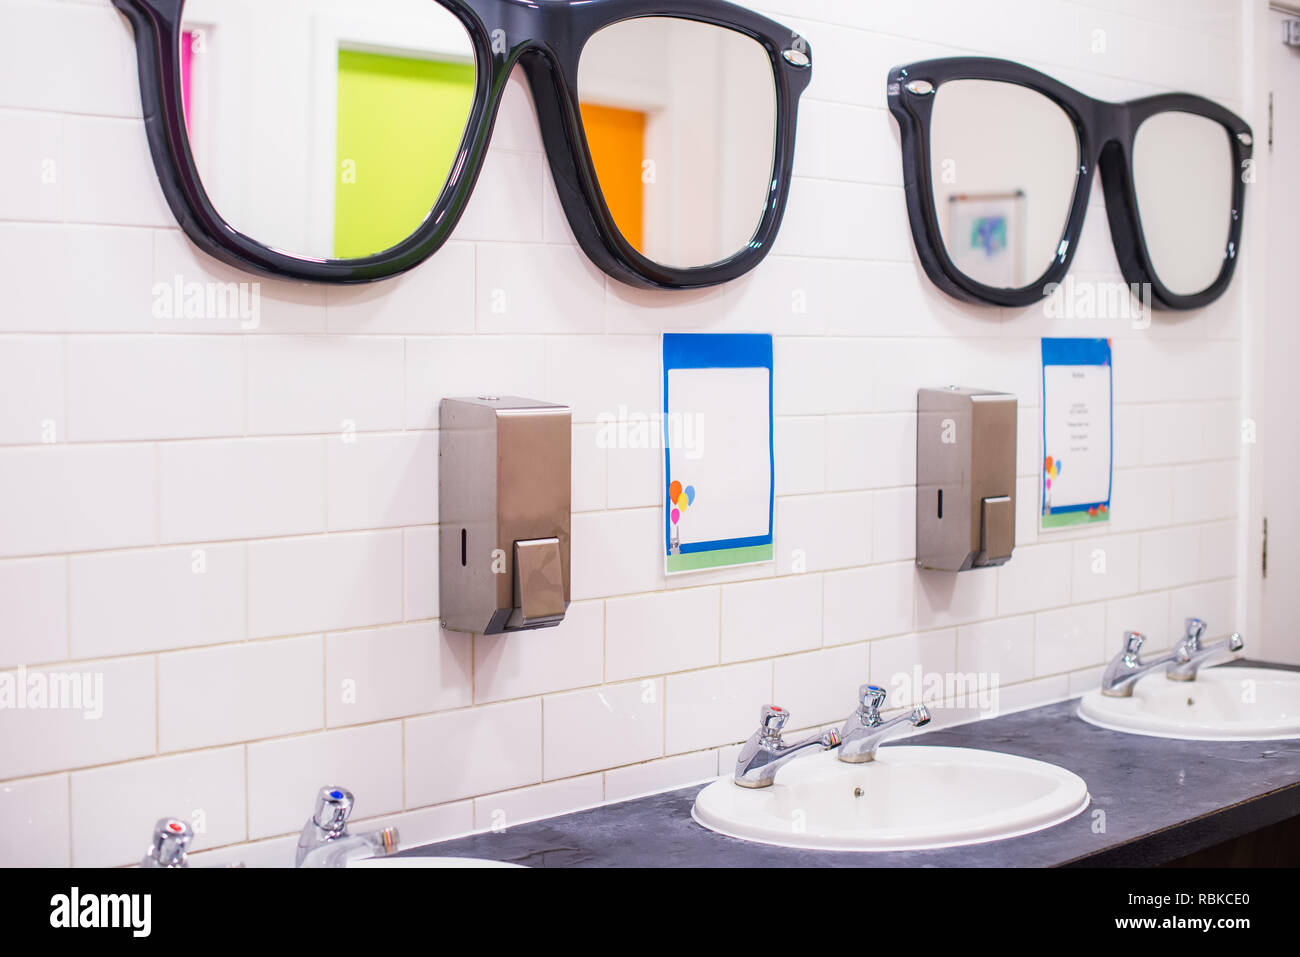 Dissipatore di lavaggio e grandi specchi a forma di occhiali in wc pubblico , fila di inglese due gru lavabo in bagno. Messa a fuoco selettiva, spazio di copia Foto Stock